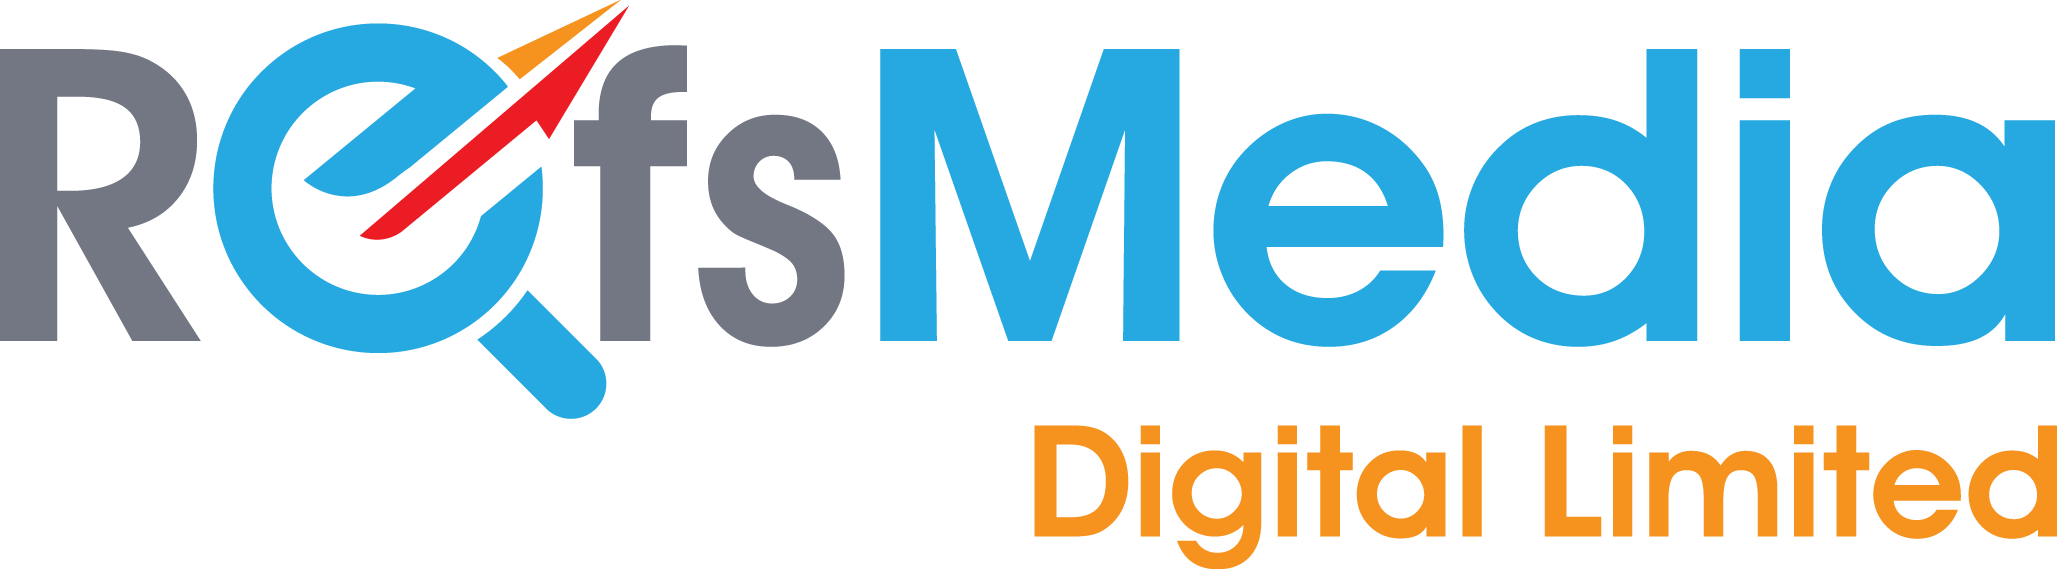 RefsMedia Digital Limited